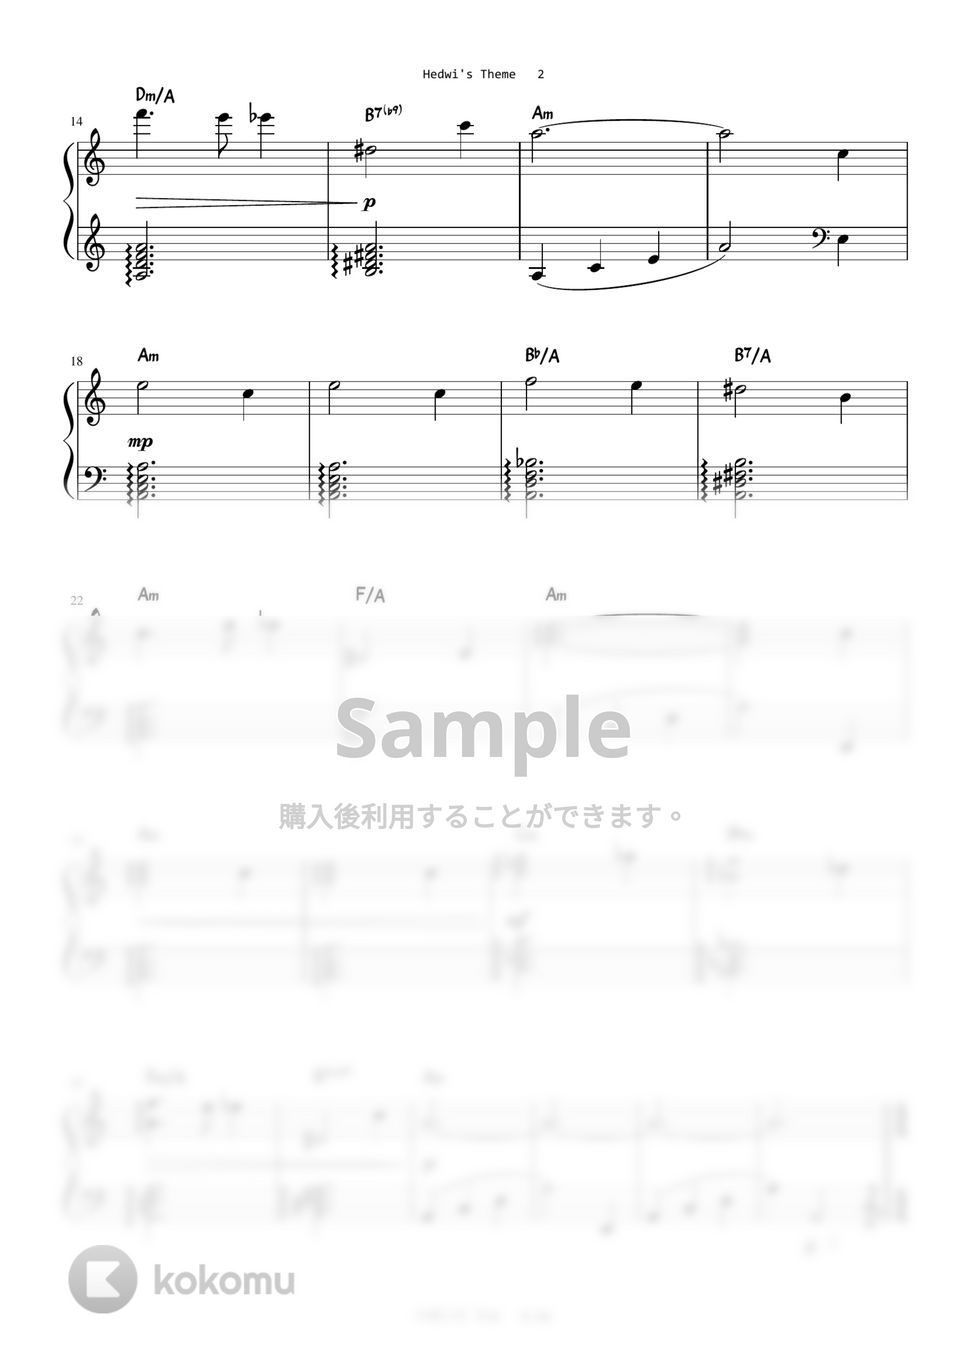 ハリーポッター - Hedwig's Theme (Level 2 - Easy Key) by A.Ha